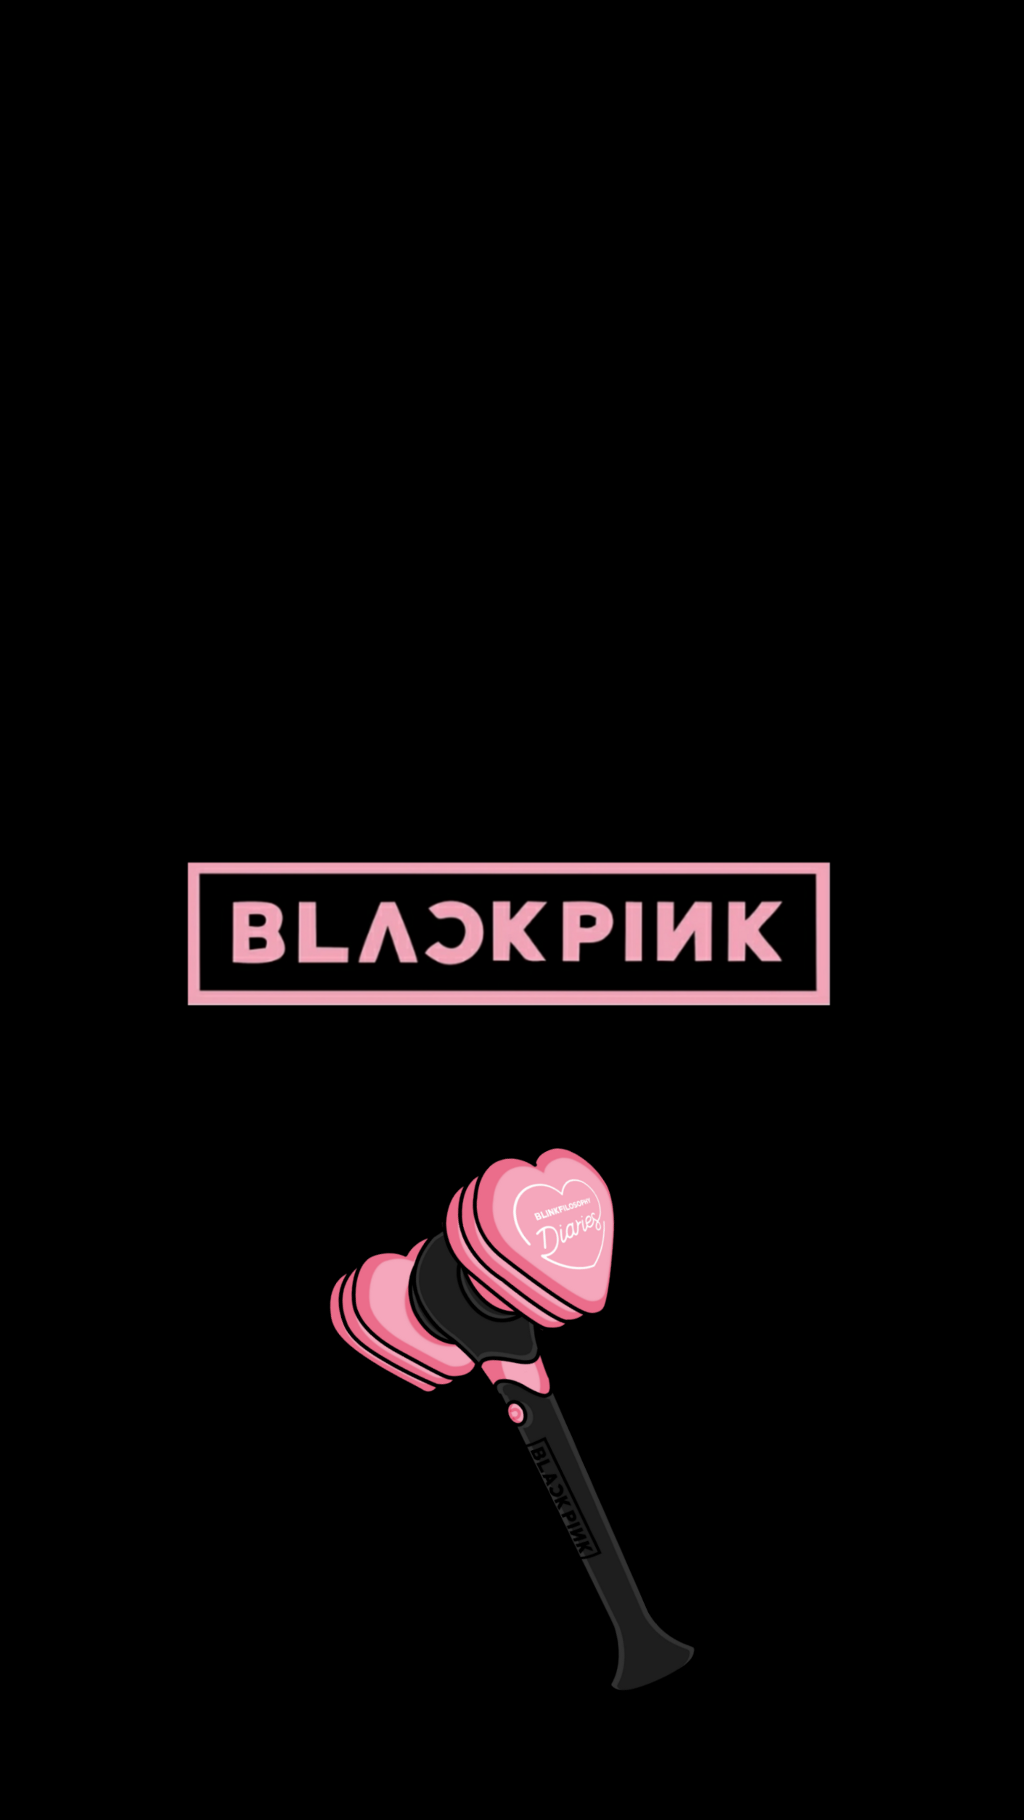 BlackPink Logo Wallpaper